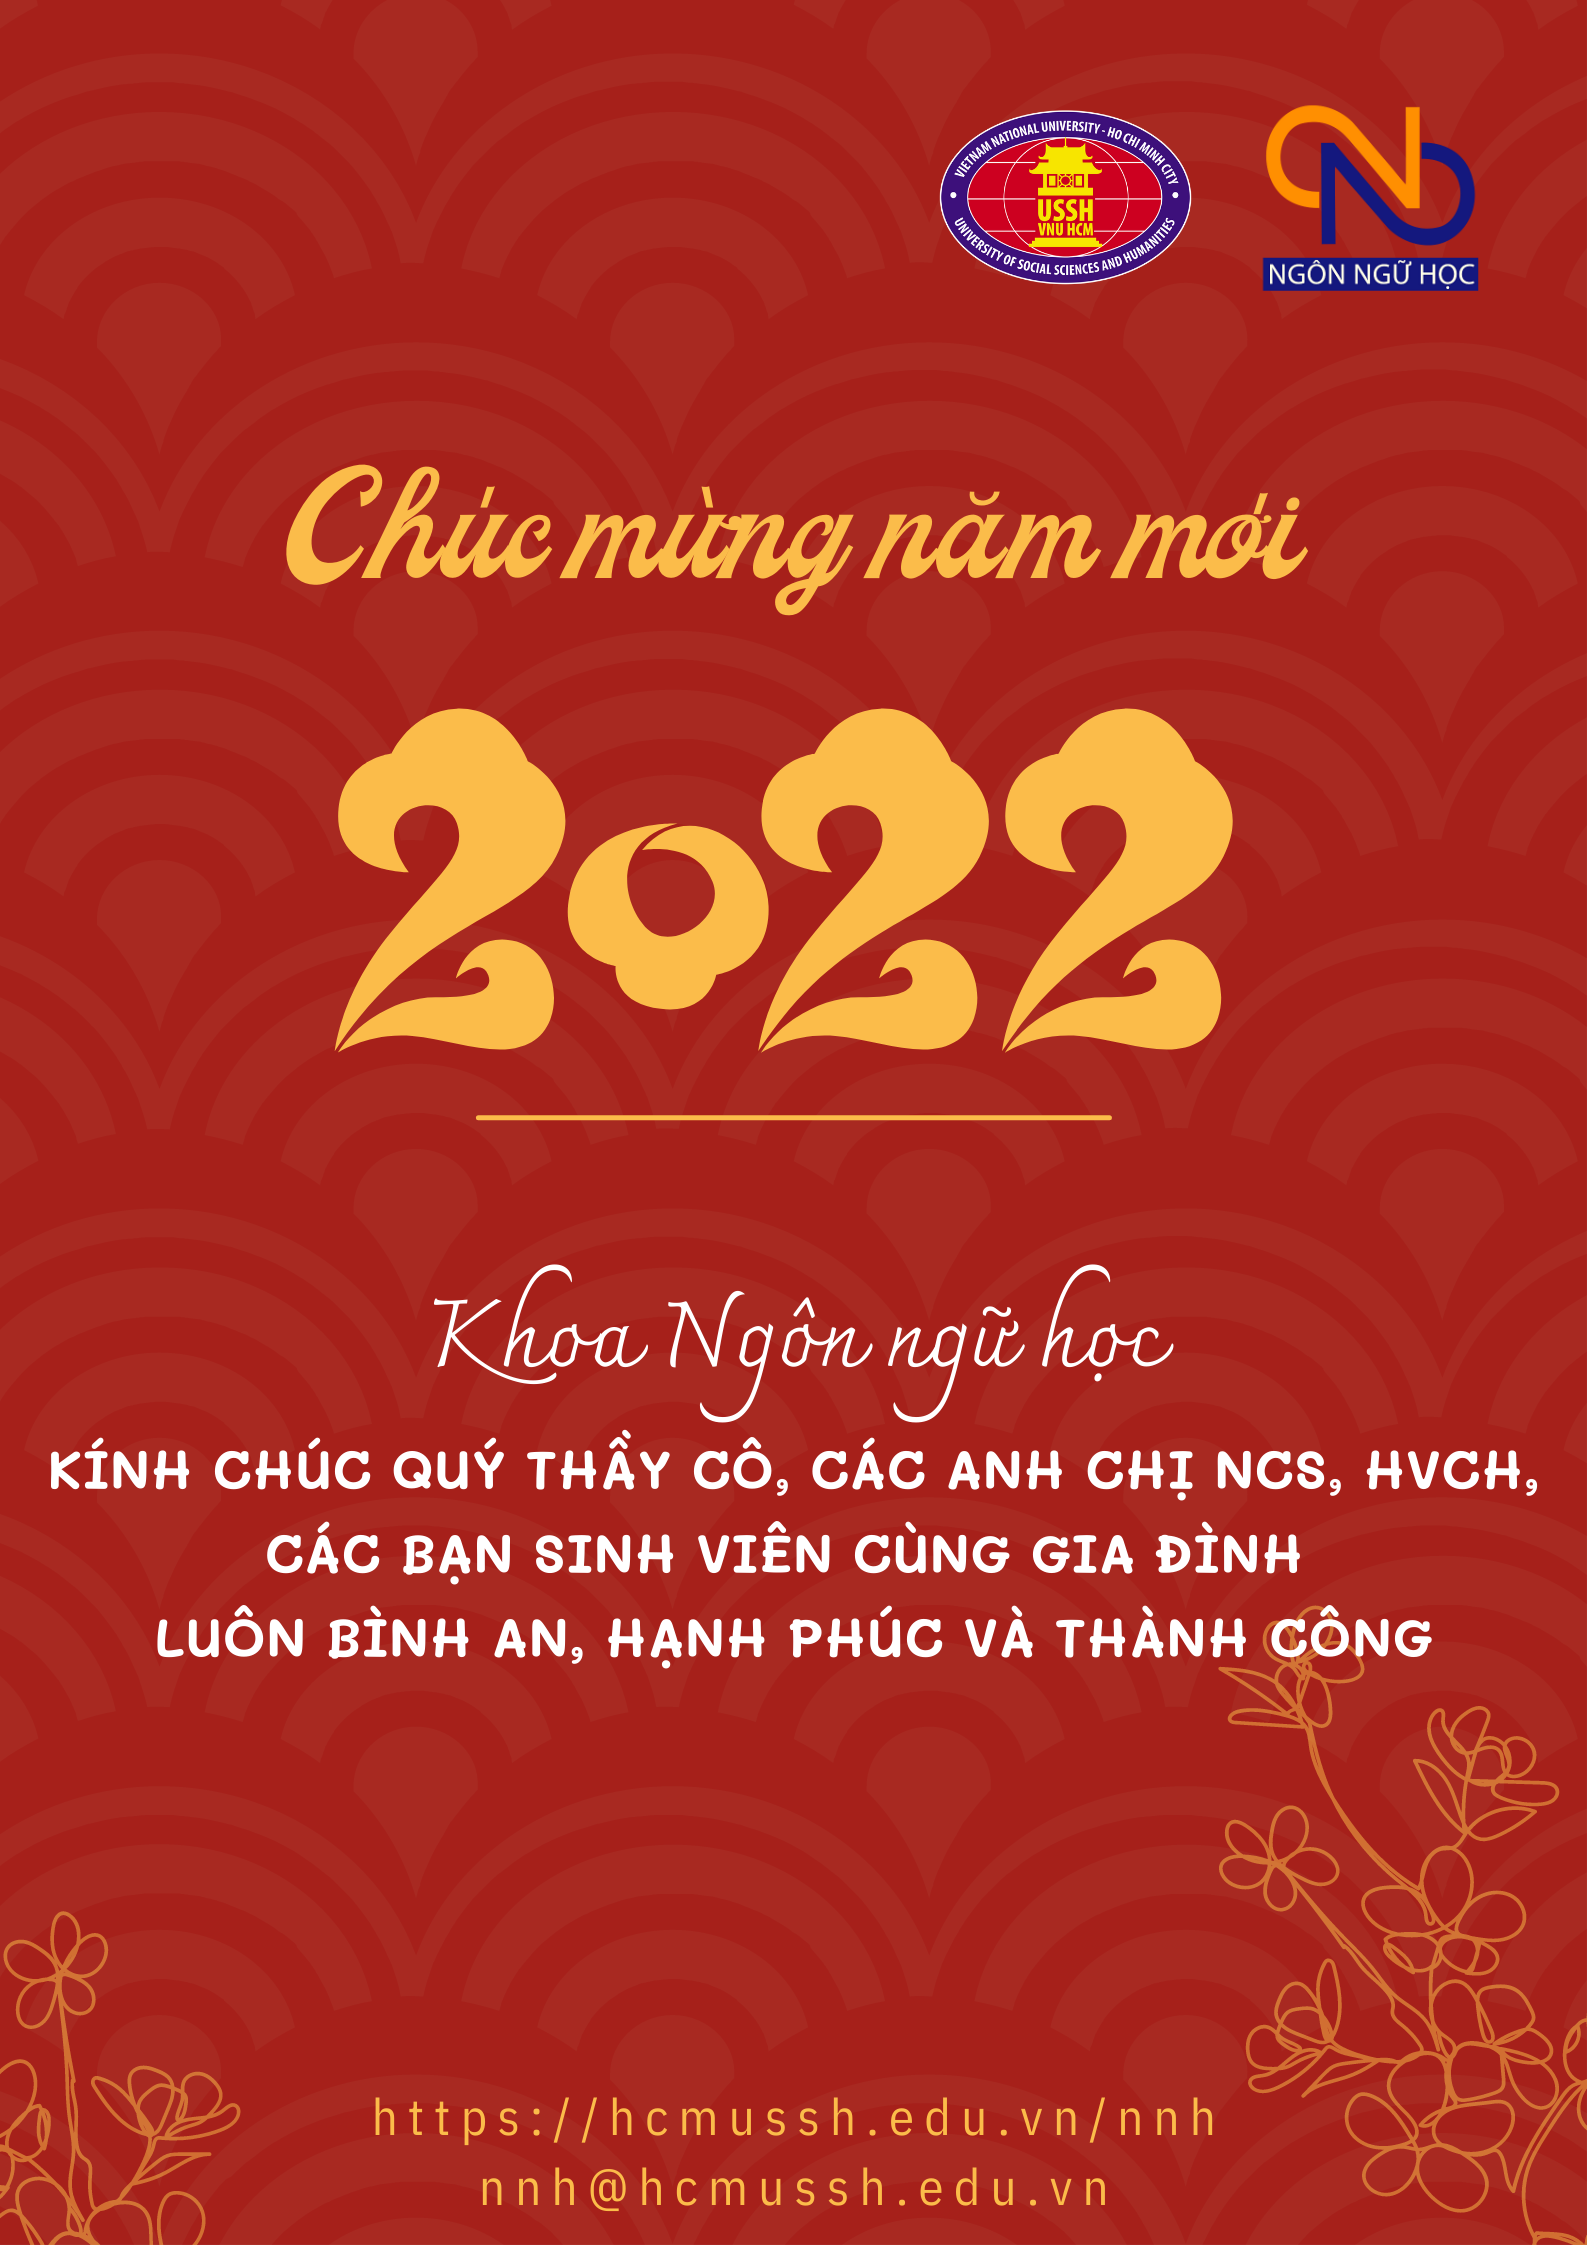 Khoa Ngôn ngữ học (HCMUSSH) chúc mừng năm mới 2022